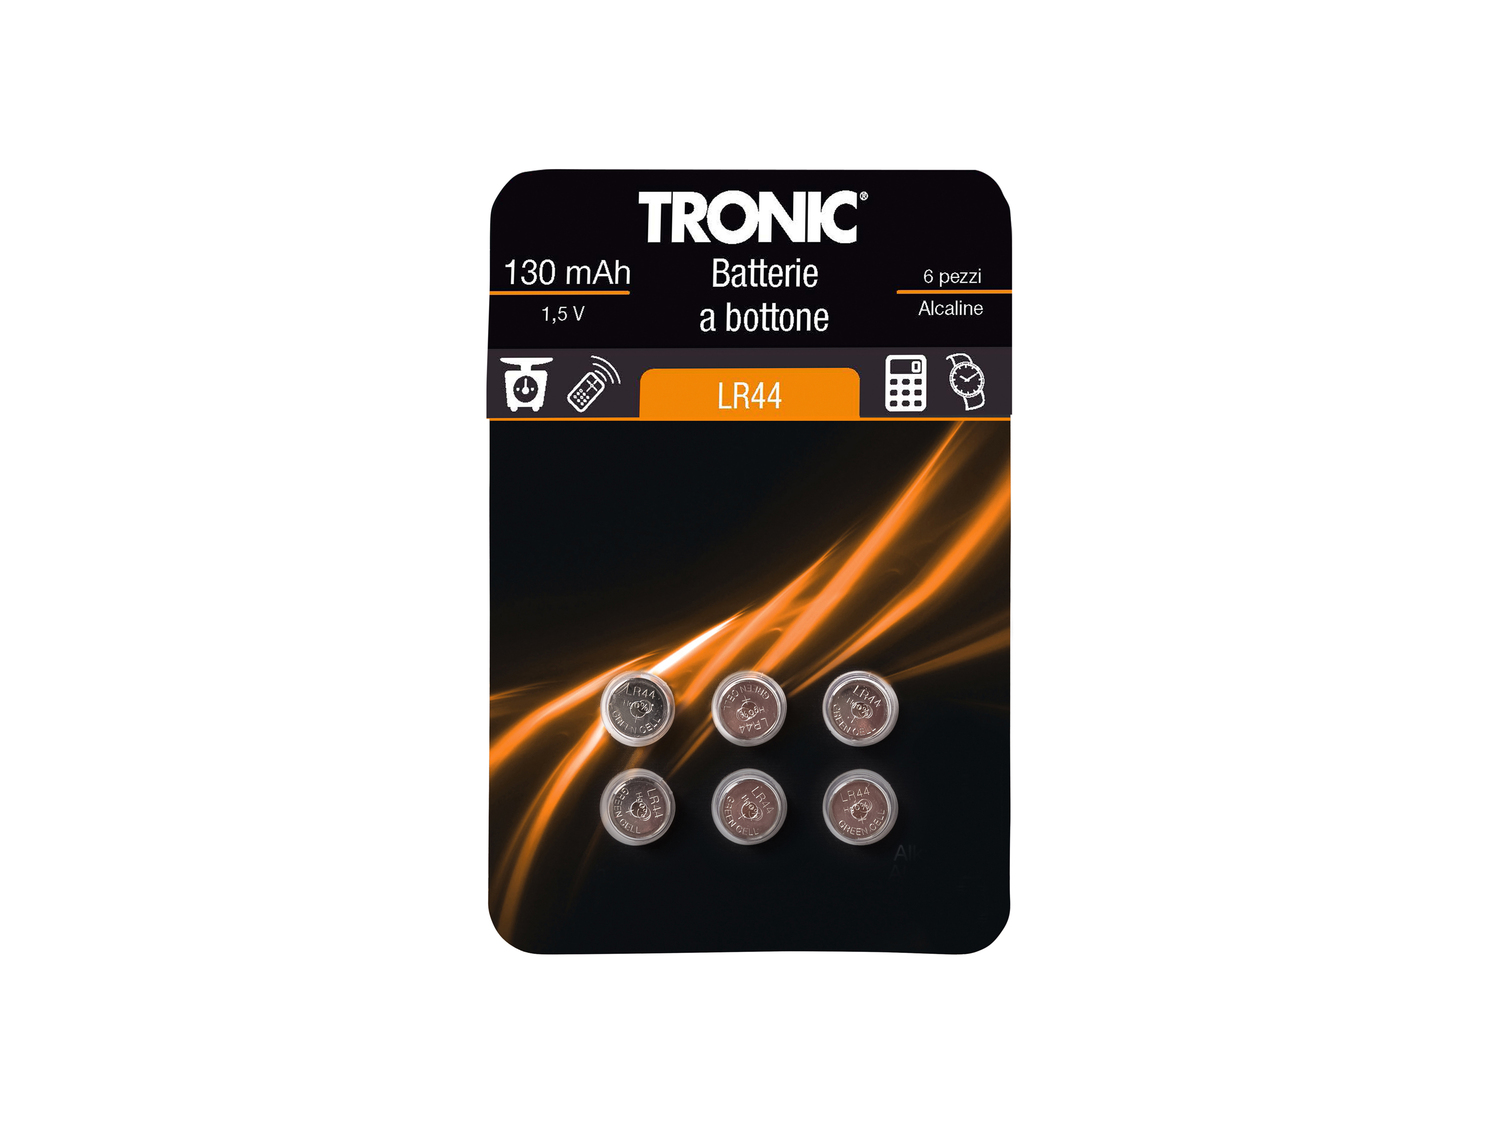 Batterie a bottone Tronic, prezzo 1.49 € 
6 pezzi 
- Alcaline o al litio
- ...